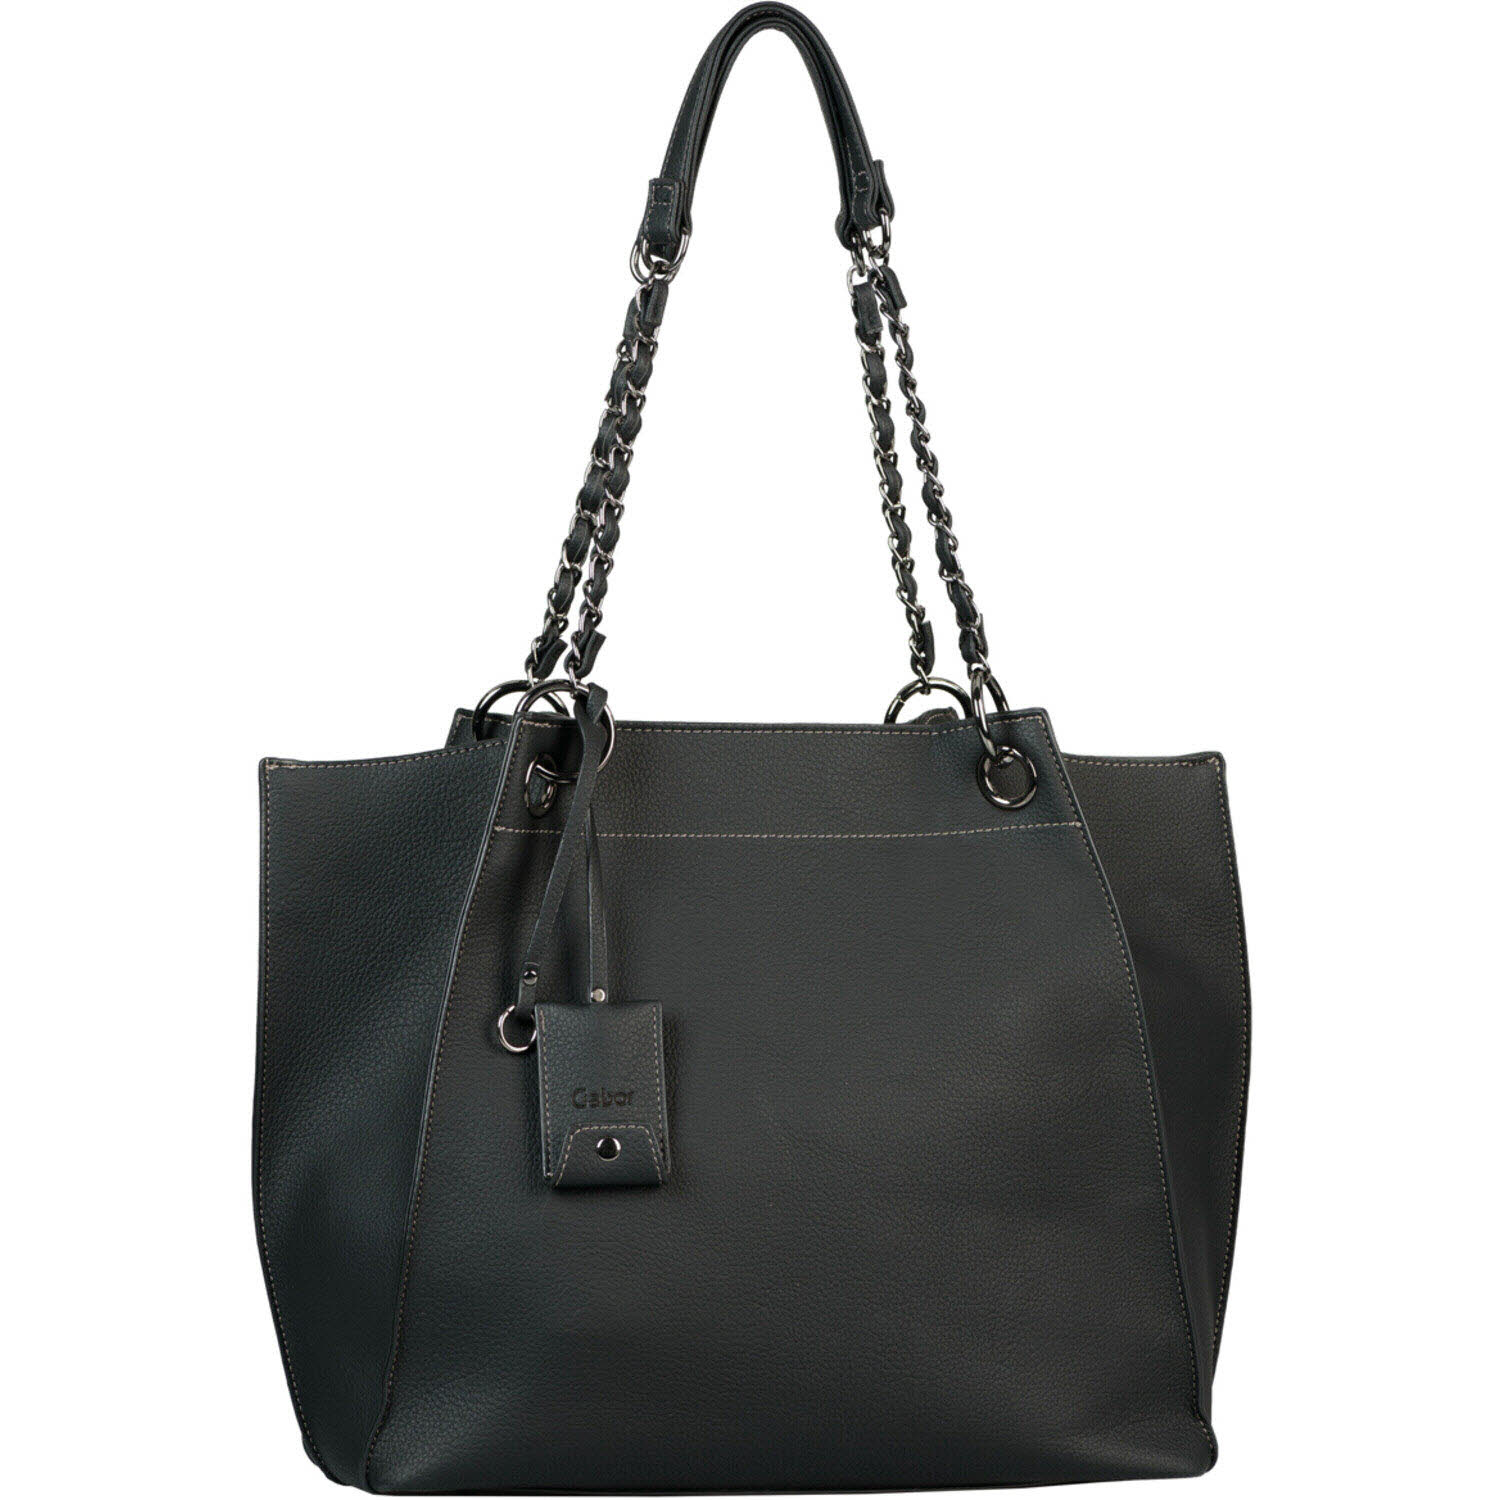 Damen Shopper von Gabor Bags auch in Schwarz erhältlich